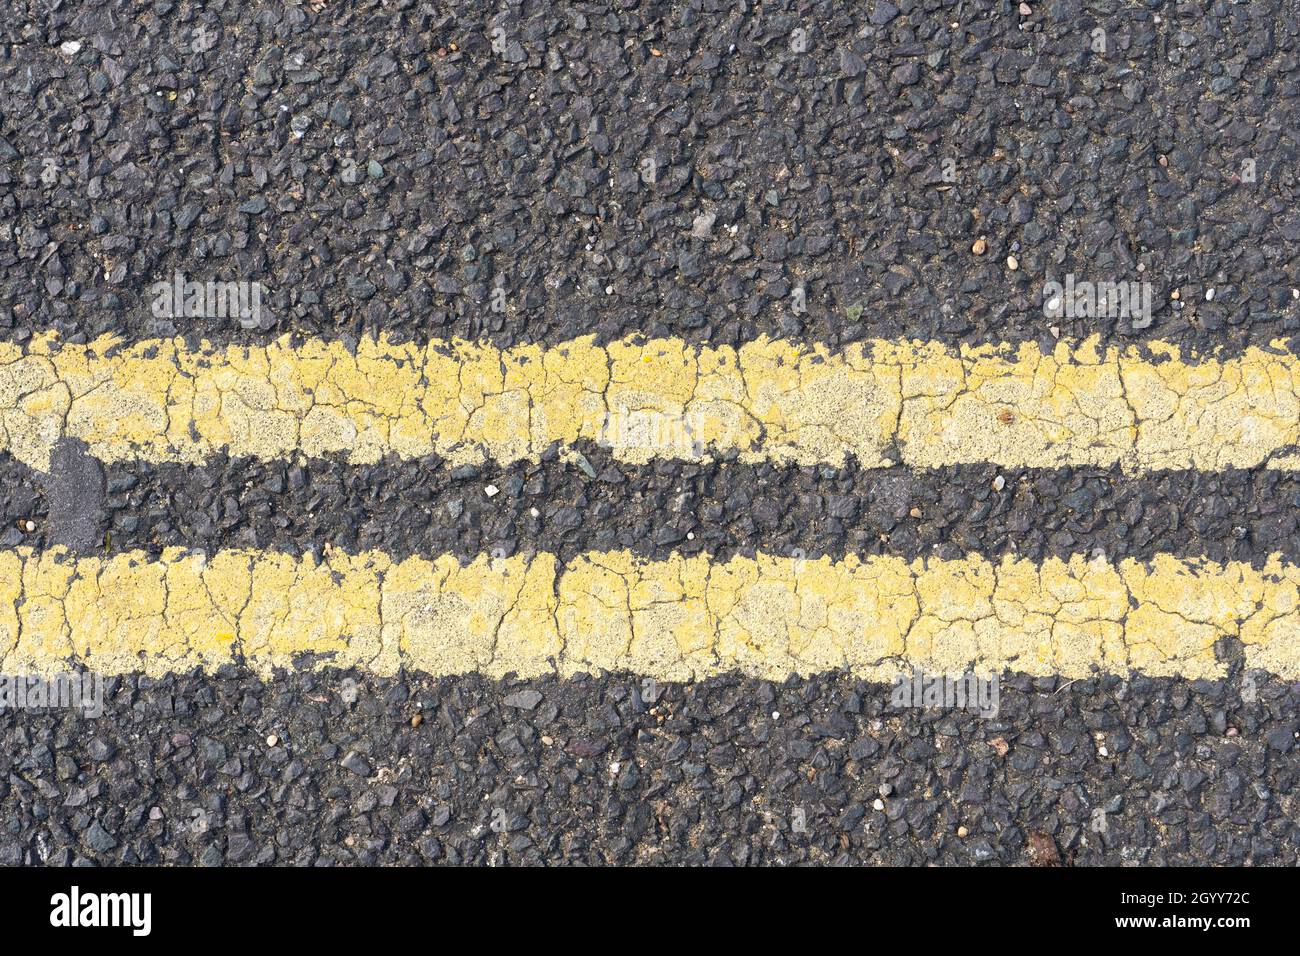 Doppelte gelbe Linien in thermoplastischer Farbe auf einer Asphaltstraße in England, die das Parken und Warten zu jeder Zeit verbieten Stockfoto